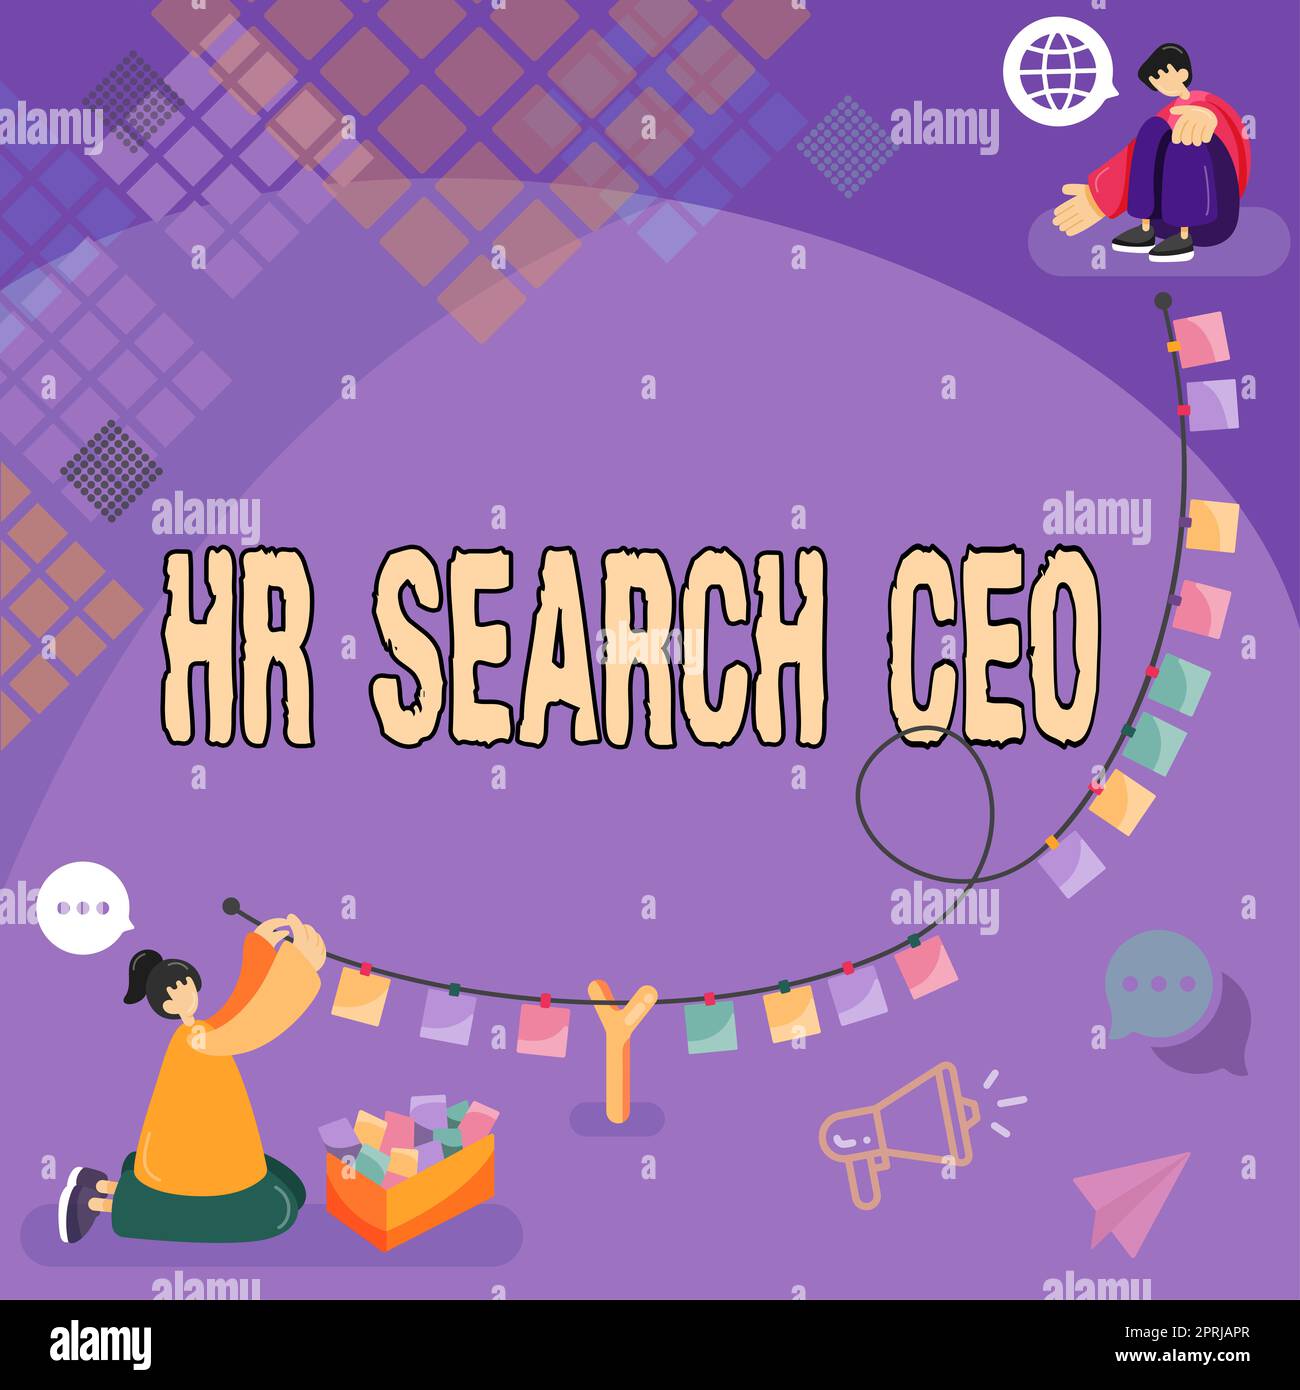 Légende conceptuelle du PDG de HR Search. Idée d'entreprise Ressources humaines à la recherche d'un nouveau Directeur général Banque D'Images